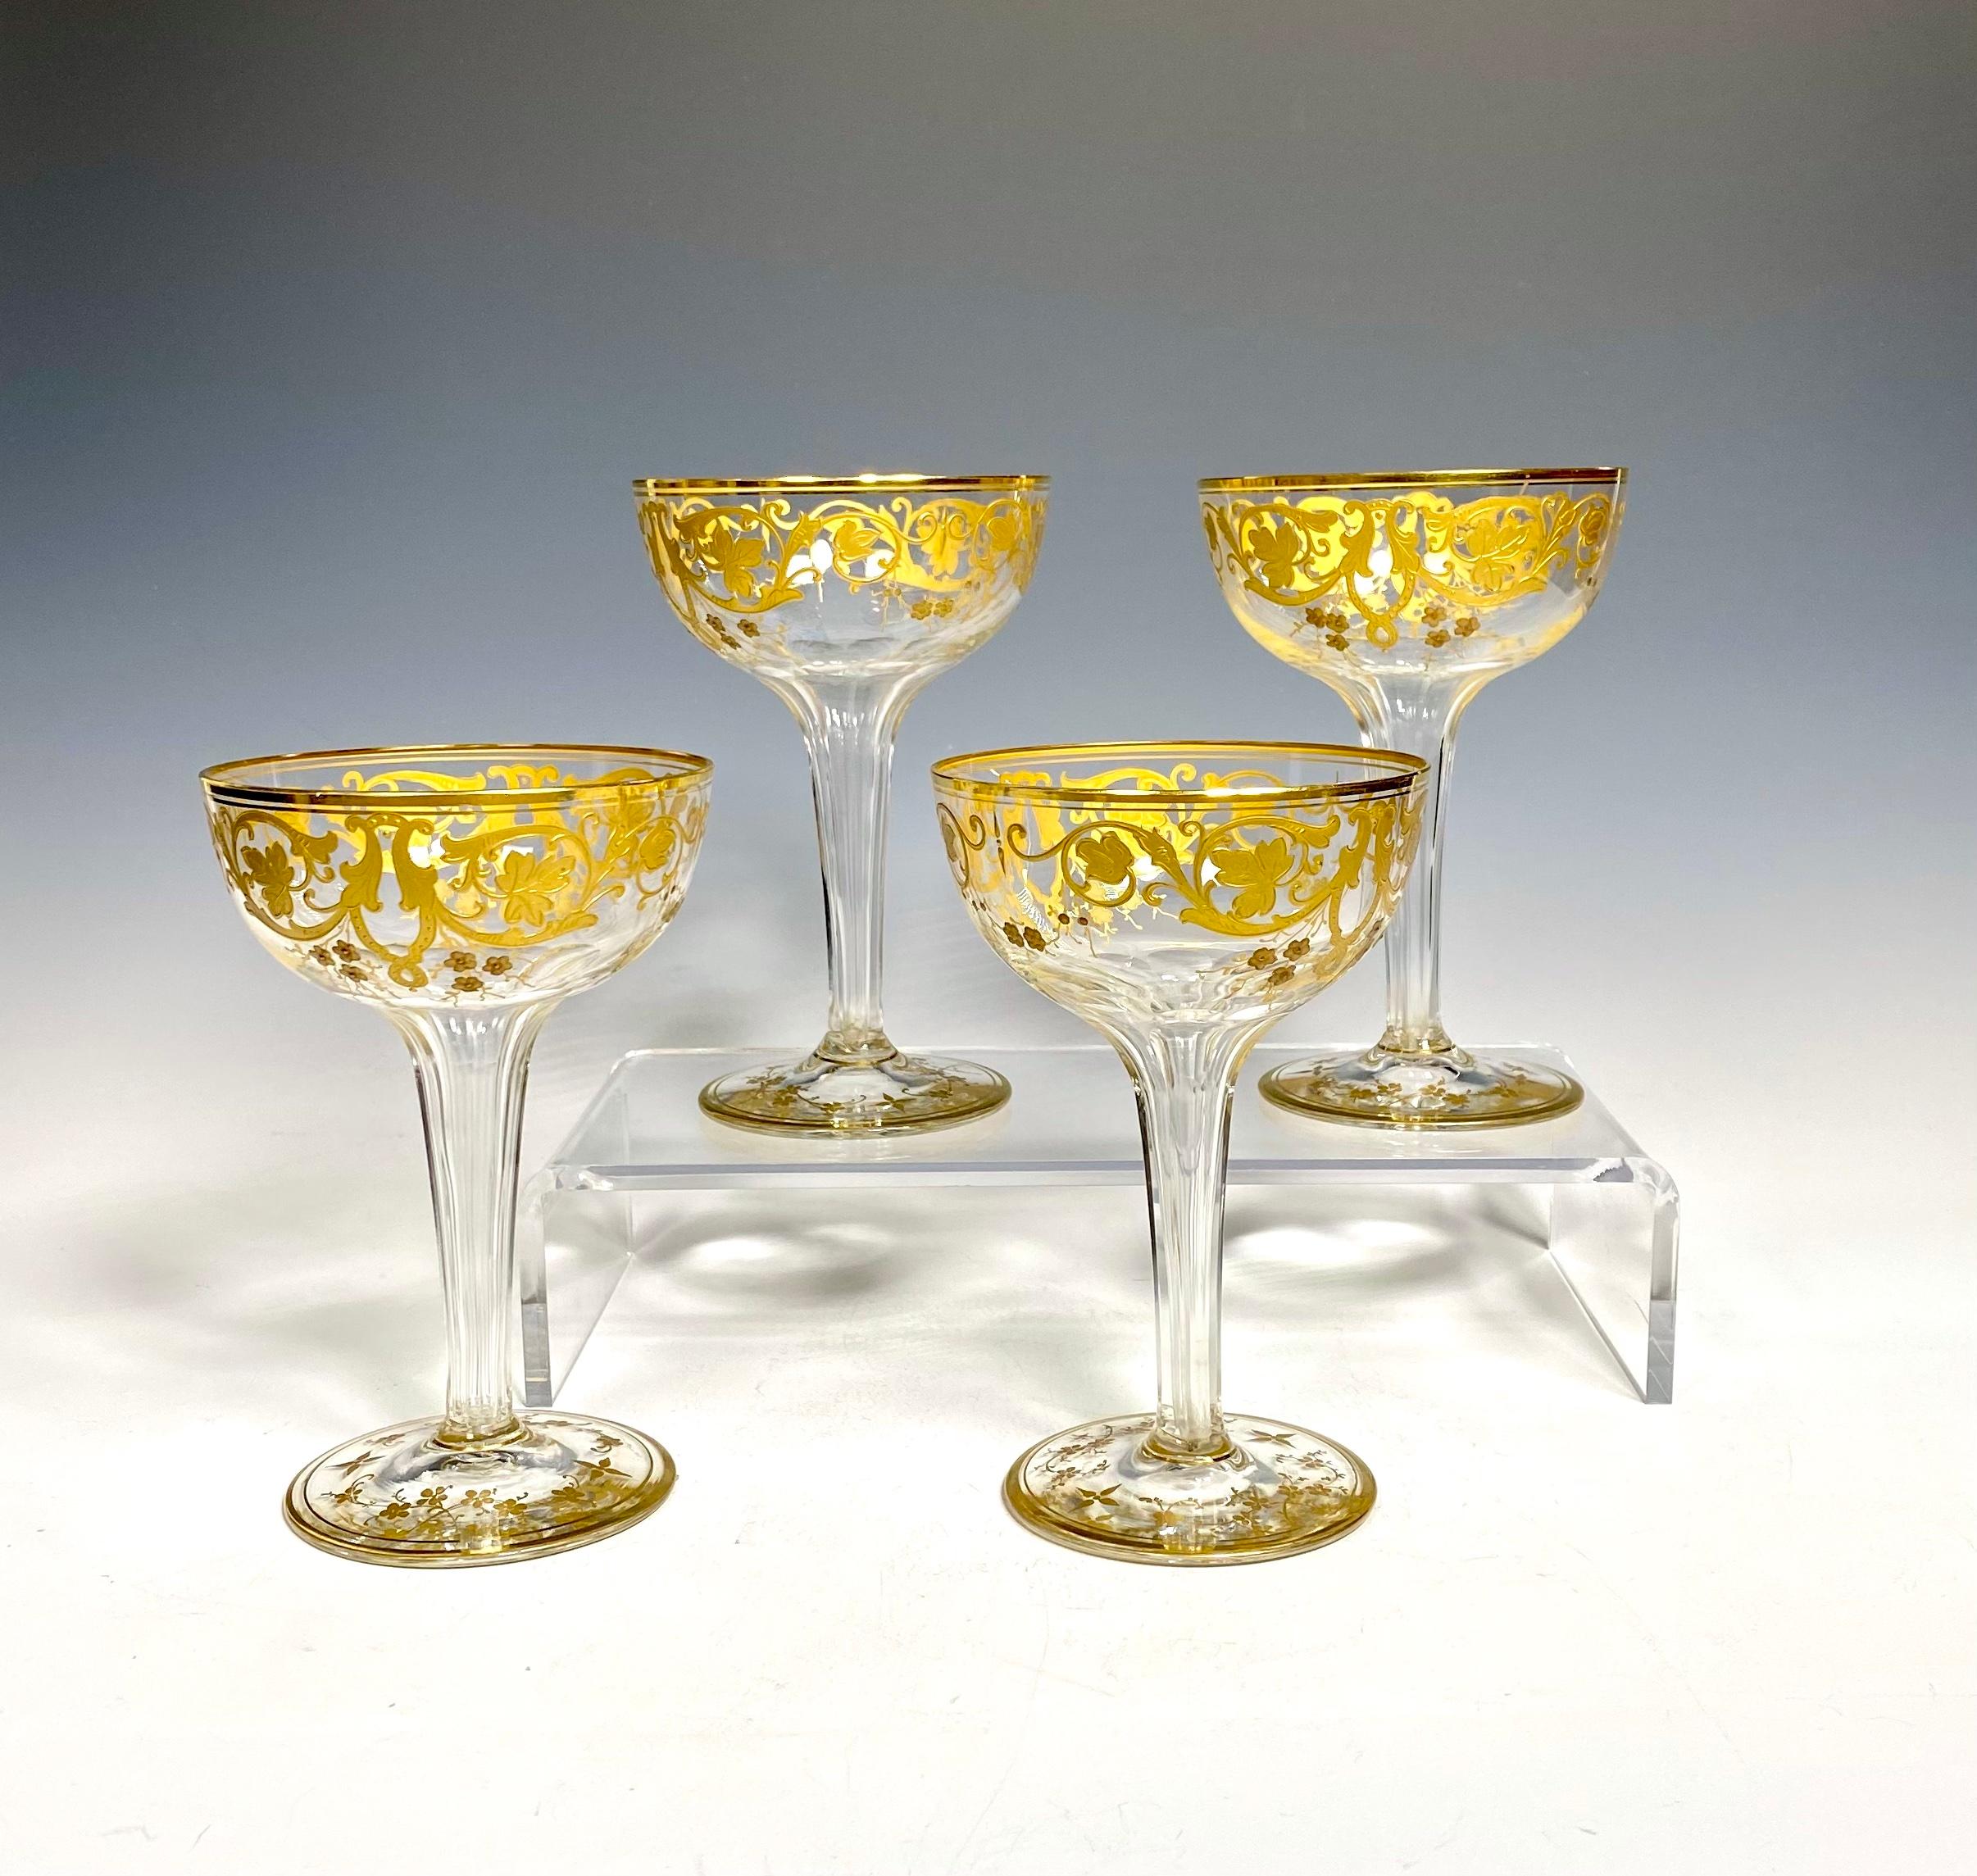 
Erhöhen Sie Ihre nächste Feier mit diesen exquisiten Baccarat vergoldeten Hohlstiel-Champagnergläsern. Diese mit Präzision und Sorgfalt gefertigten Gläser sind eine elegante Ergänzung für jede Getränkesammlung. Die Gläser eignen sich perfekt für